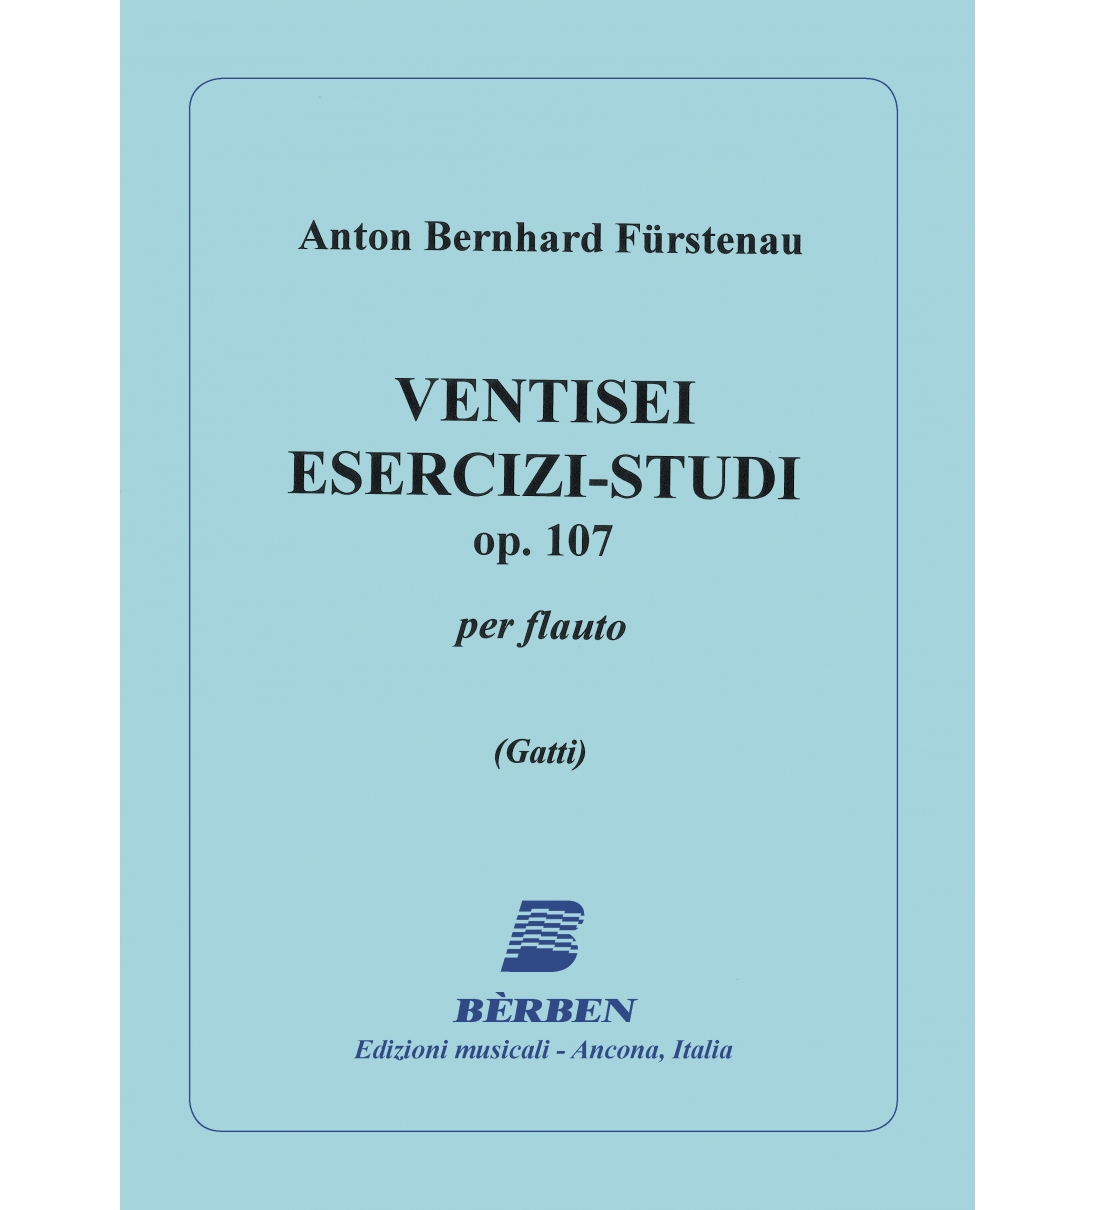 Ventisei esercizi - Studi Op.107 di Anton Bernhard Fürstenau